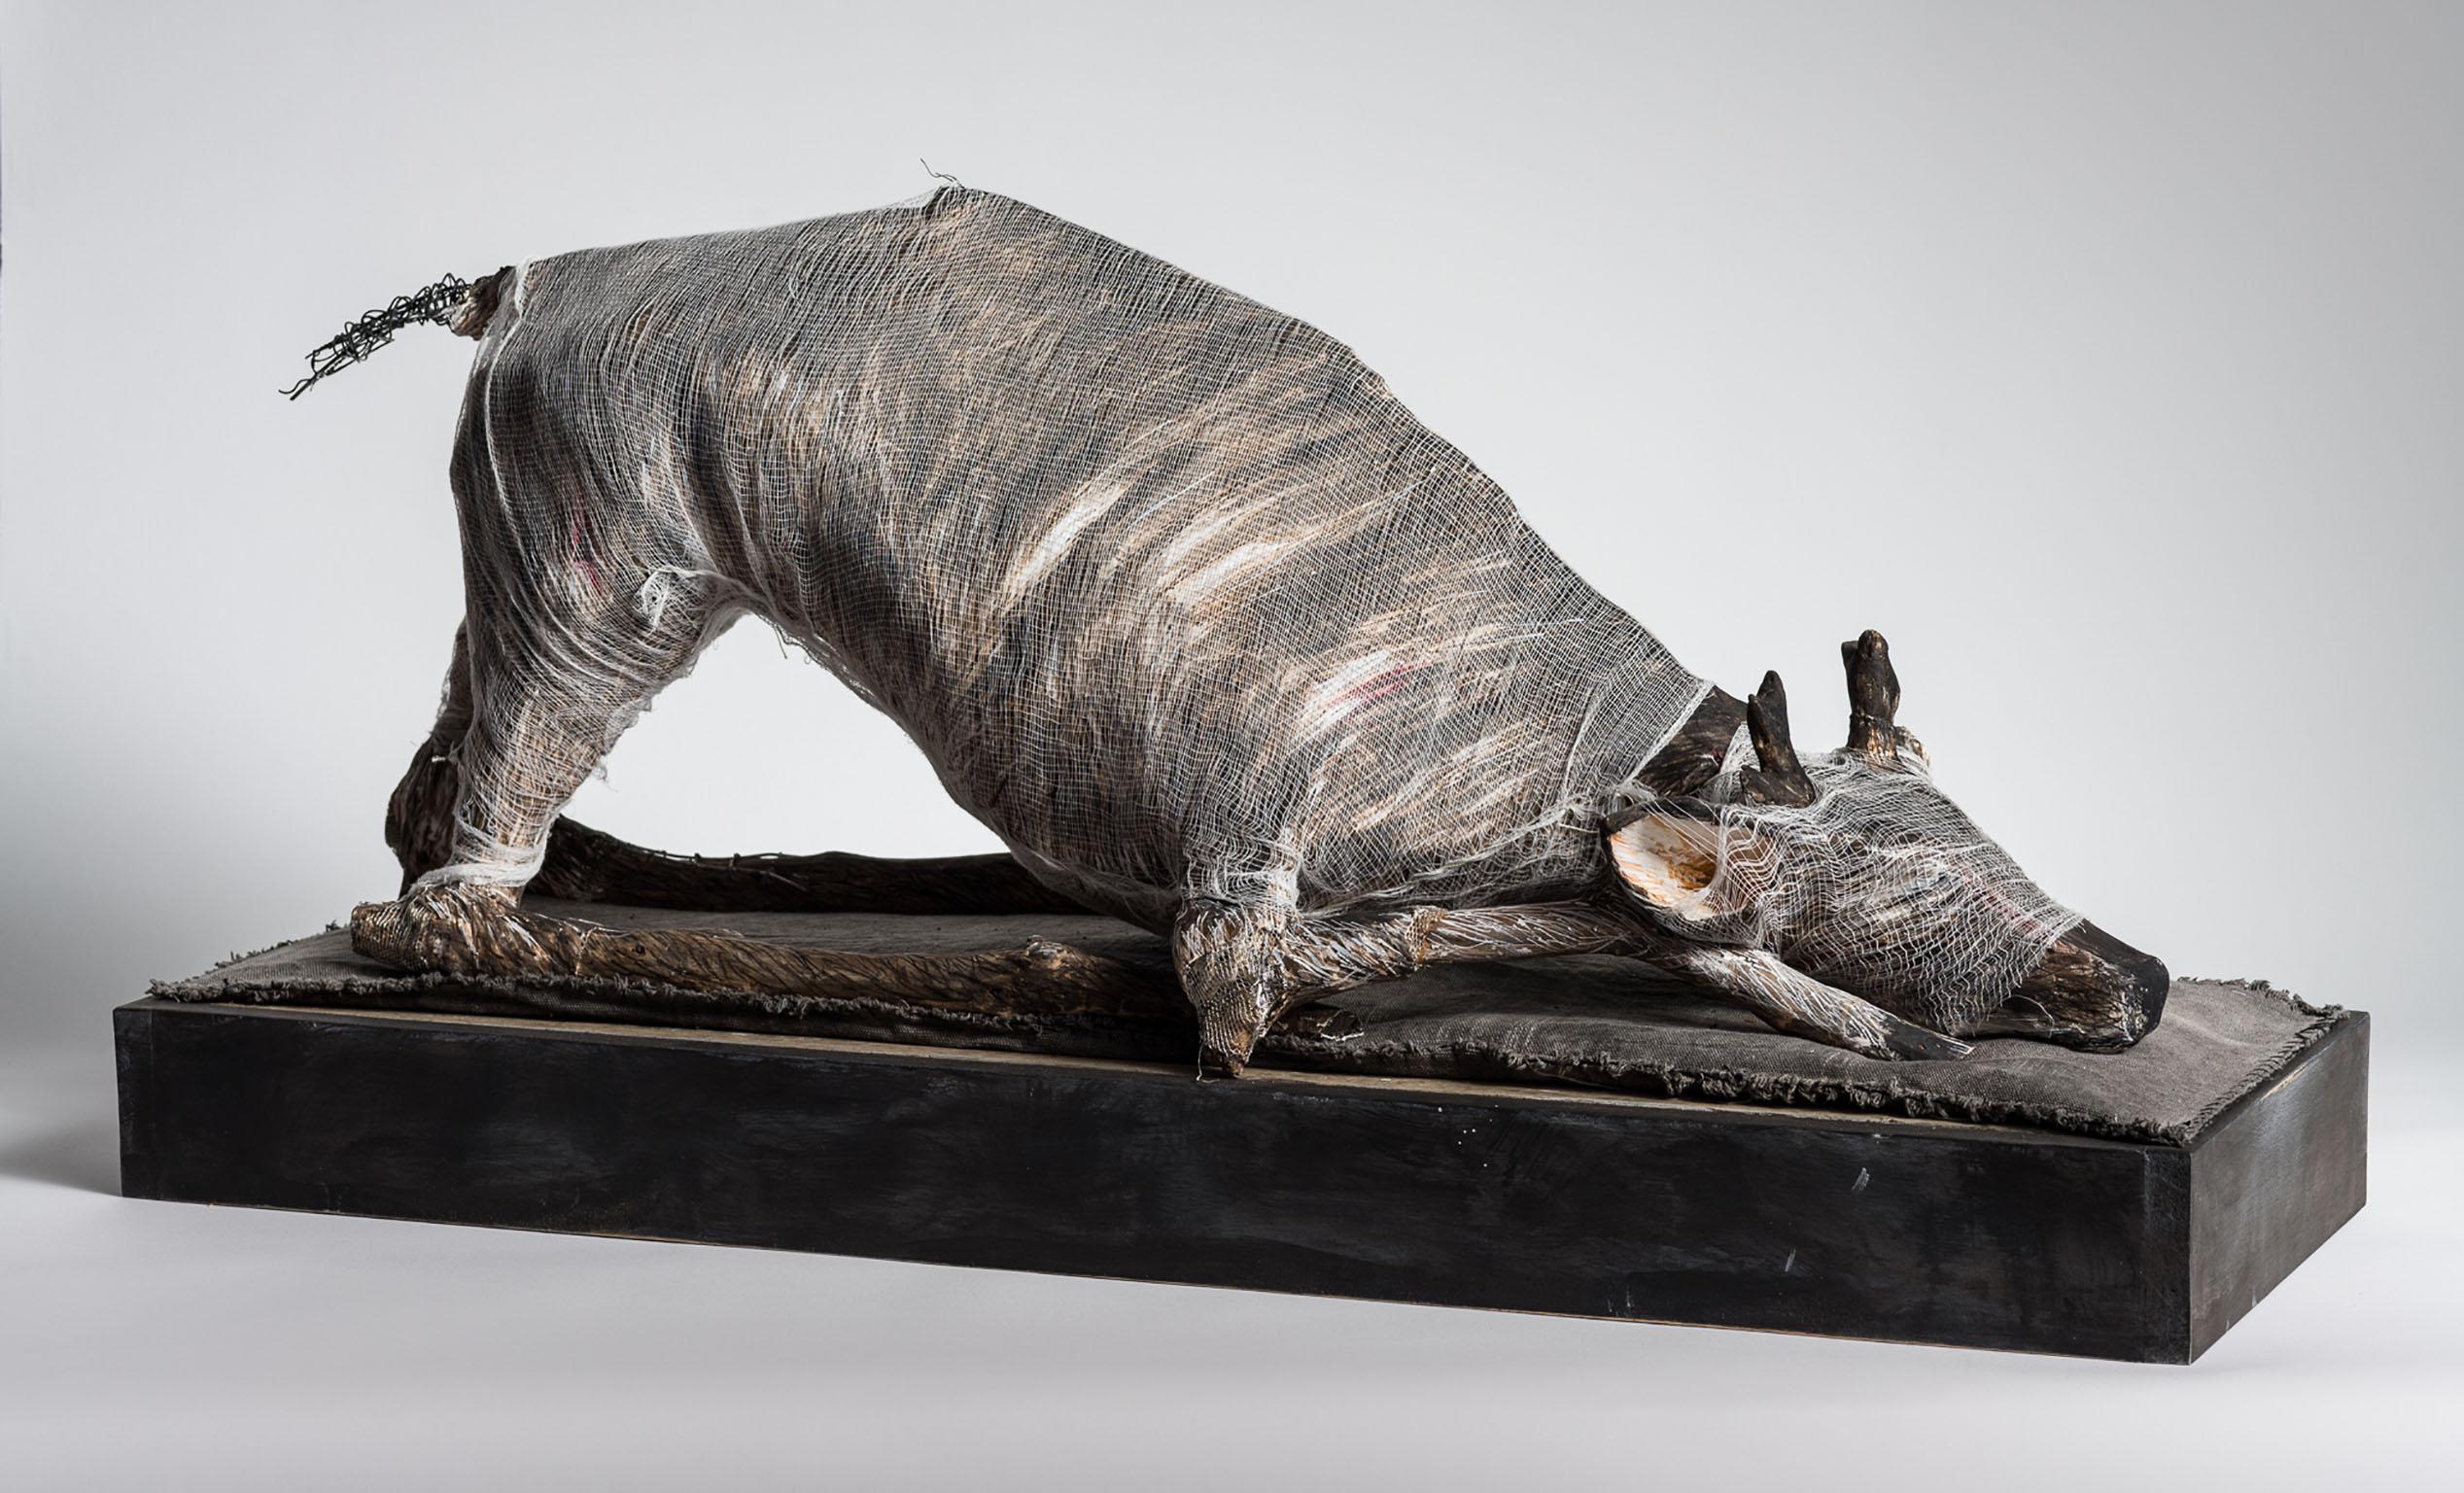 Animal in play position, sculpture : « Préparez-vous à suivre moi » - Mixed Media Art de Elizabeth Jordan